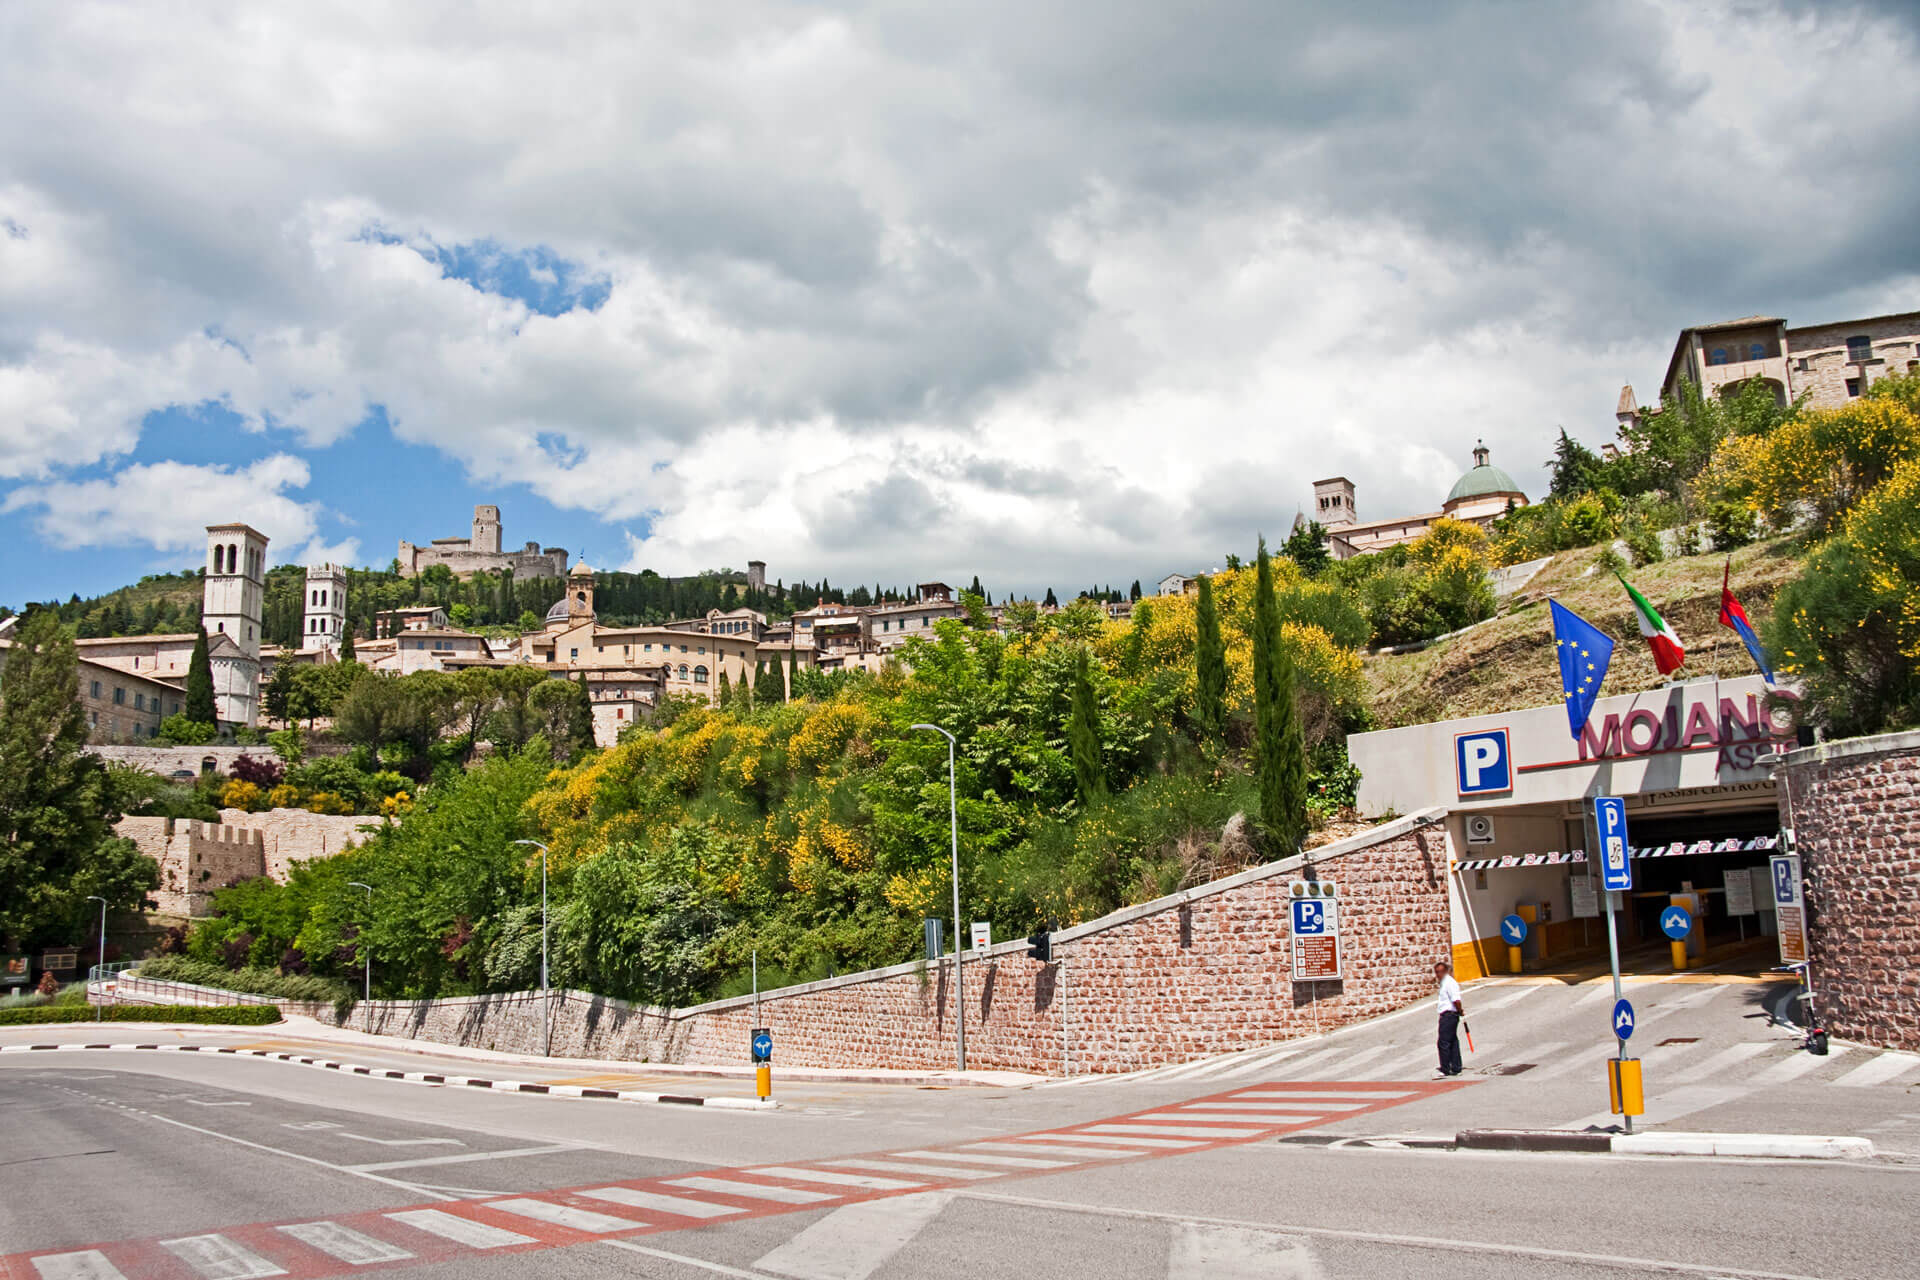 Parcheggio Mojano Assisi - Porta Lavagine Urbino - Nuovo P Manini